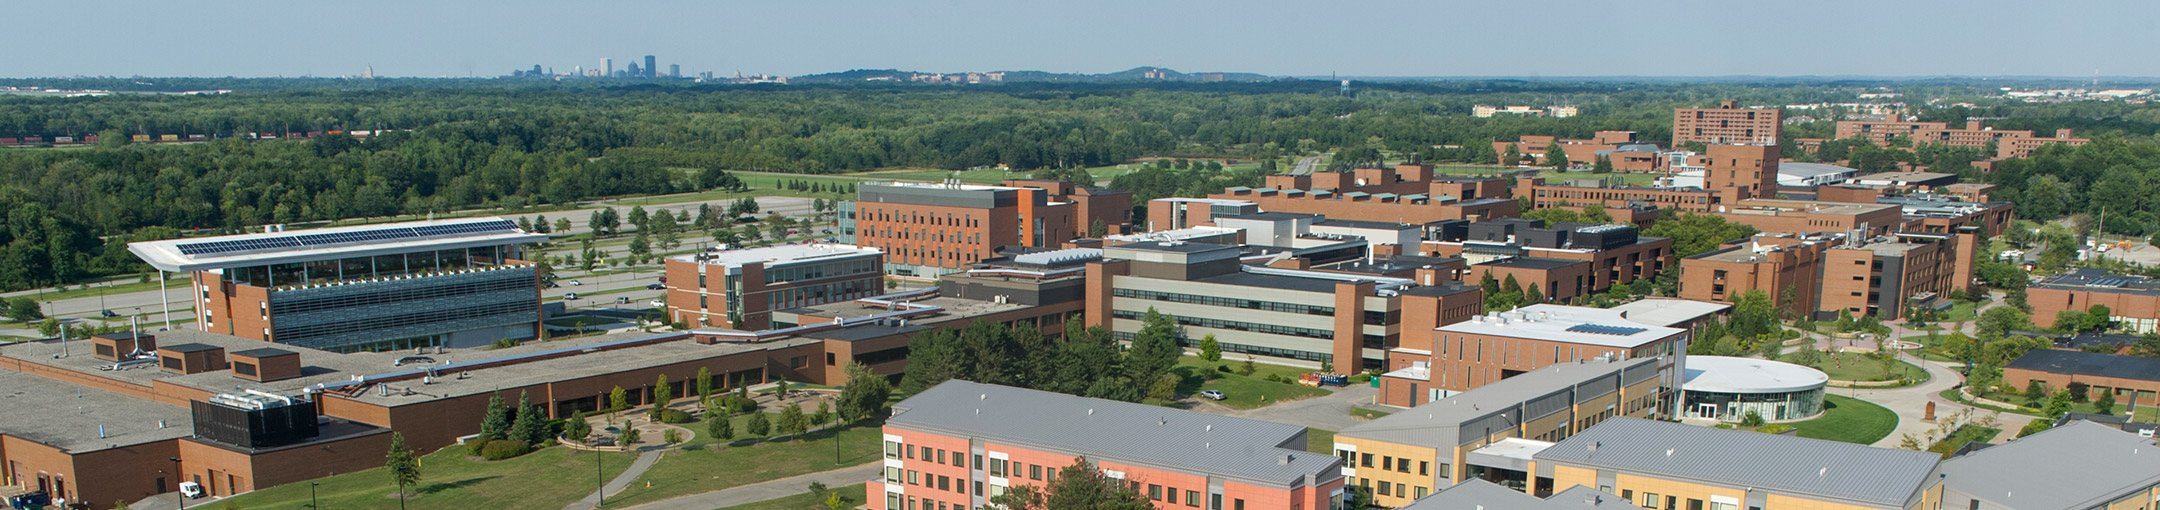 RIT campus aerial view